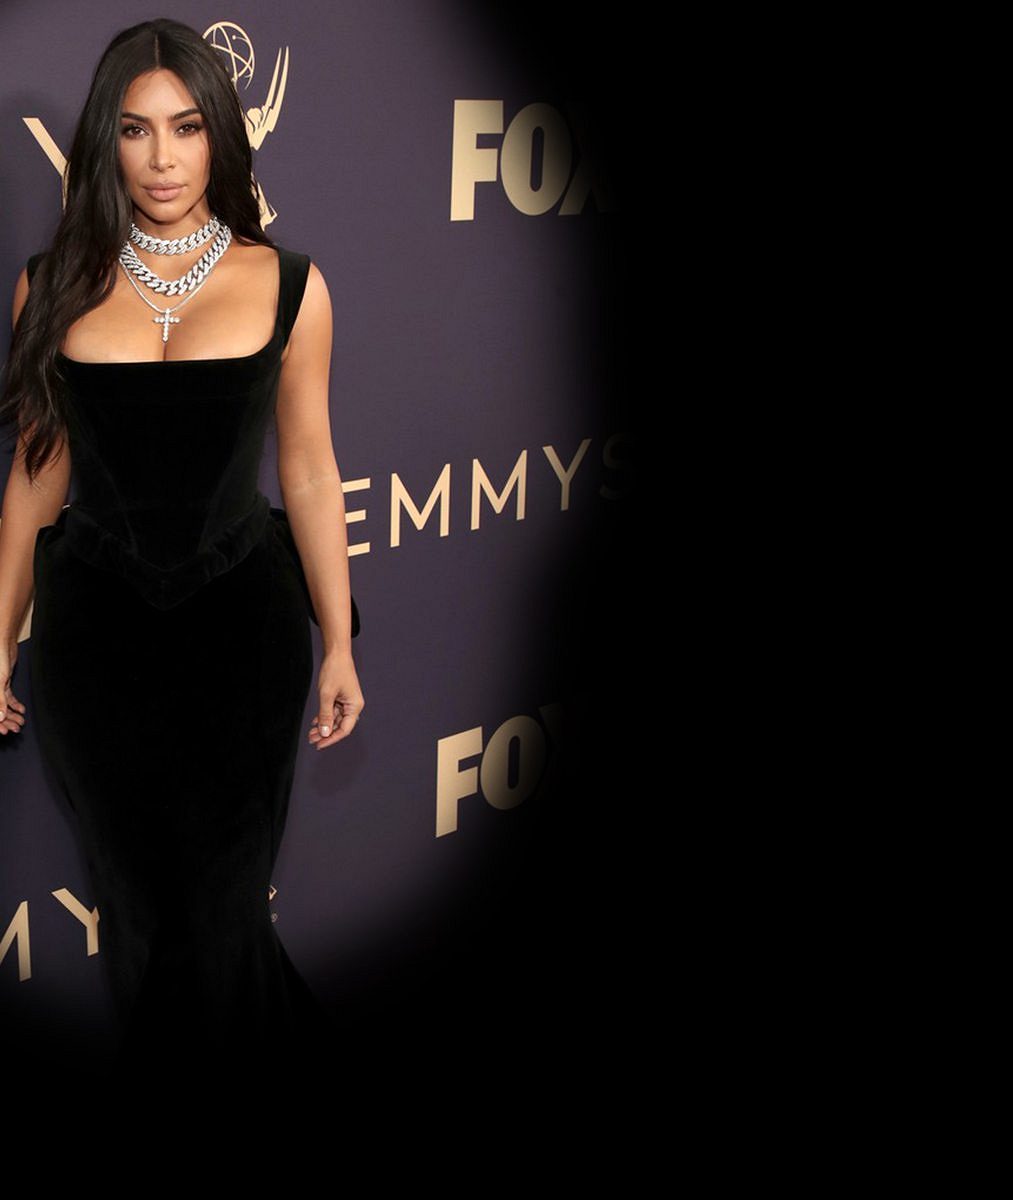 Kim Kardashian vystavila křivky v prádle i legínách: Bujným poprsím provokovala fanoušky na sociálních sítích